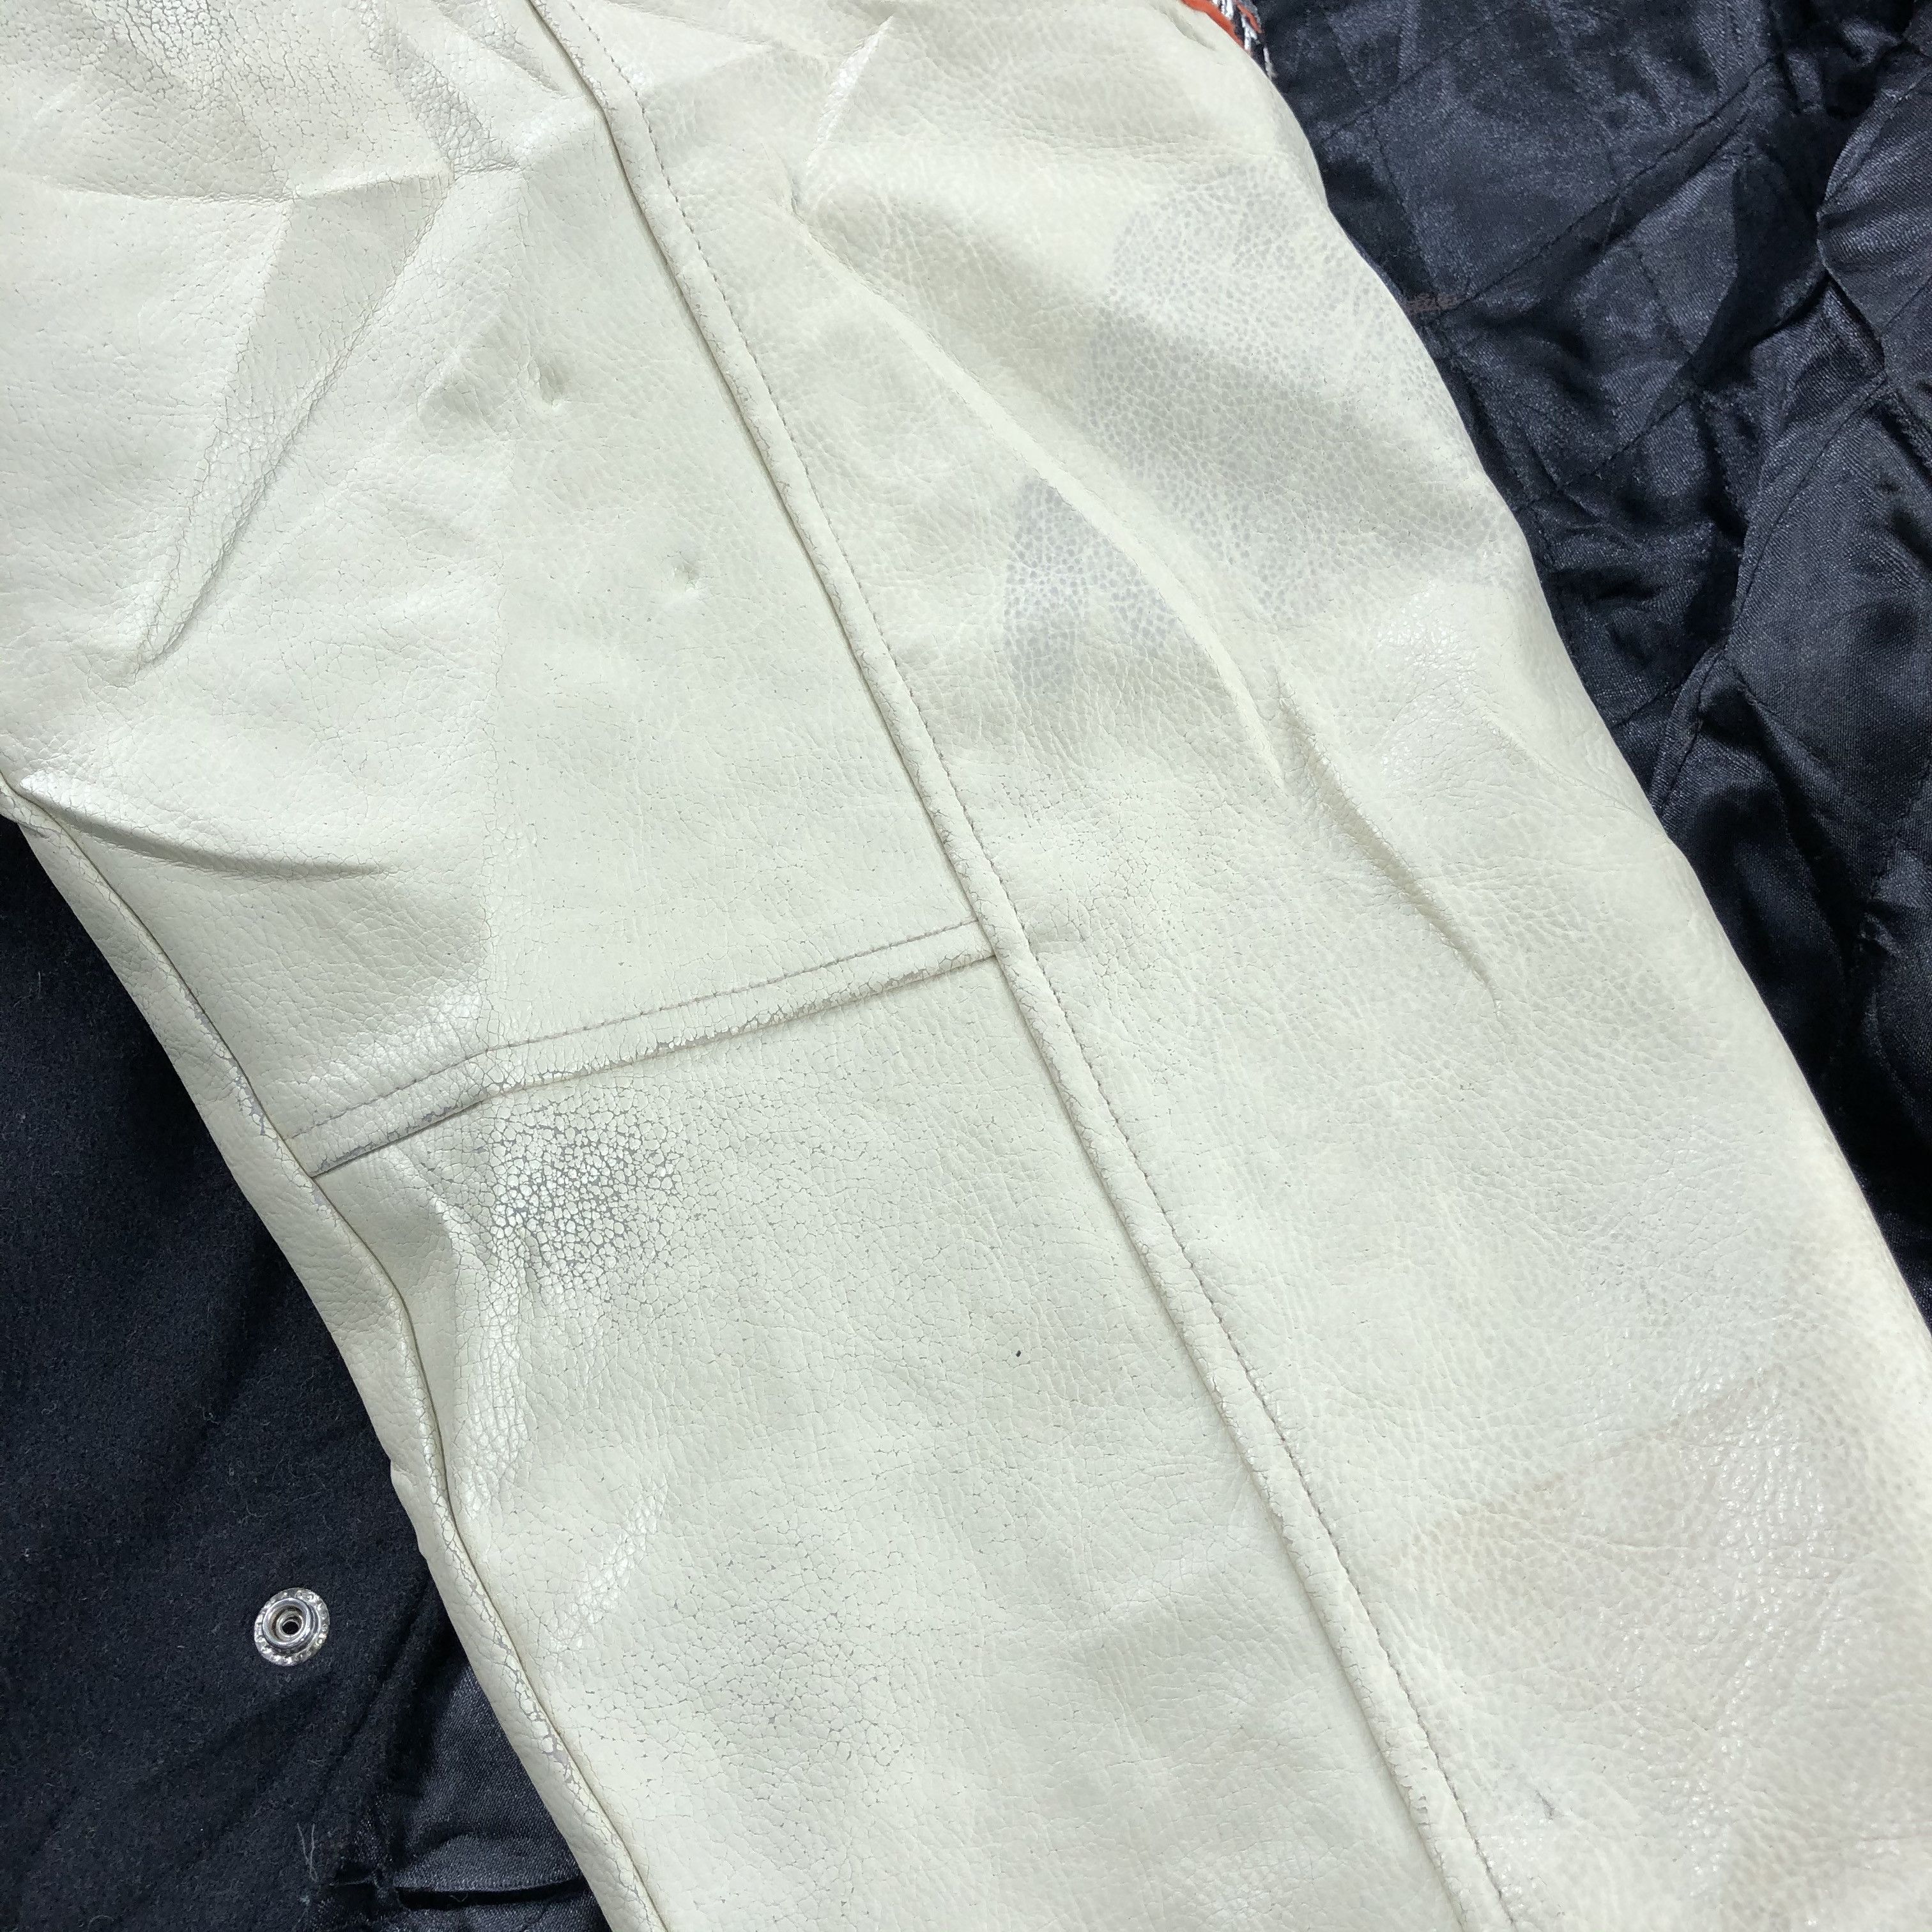 Vintage ACC Varsity Jacket Letterman Jacket Size US L / EU 52-54 / 3 - 13 Thumbnail